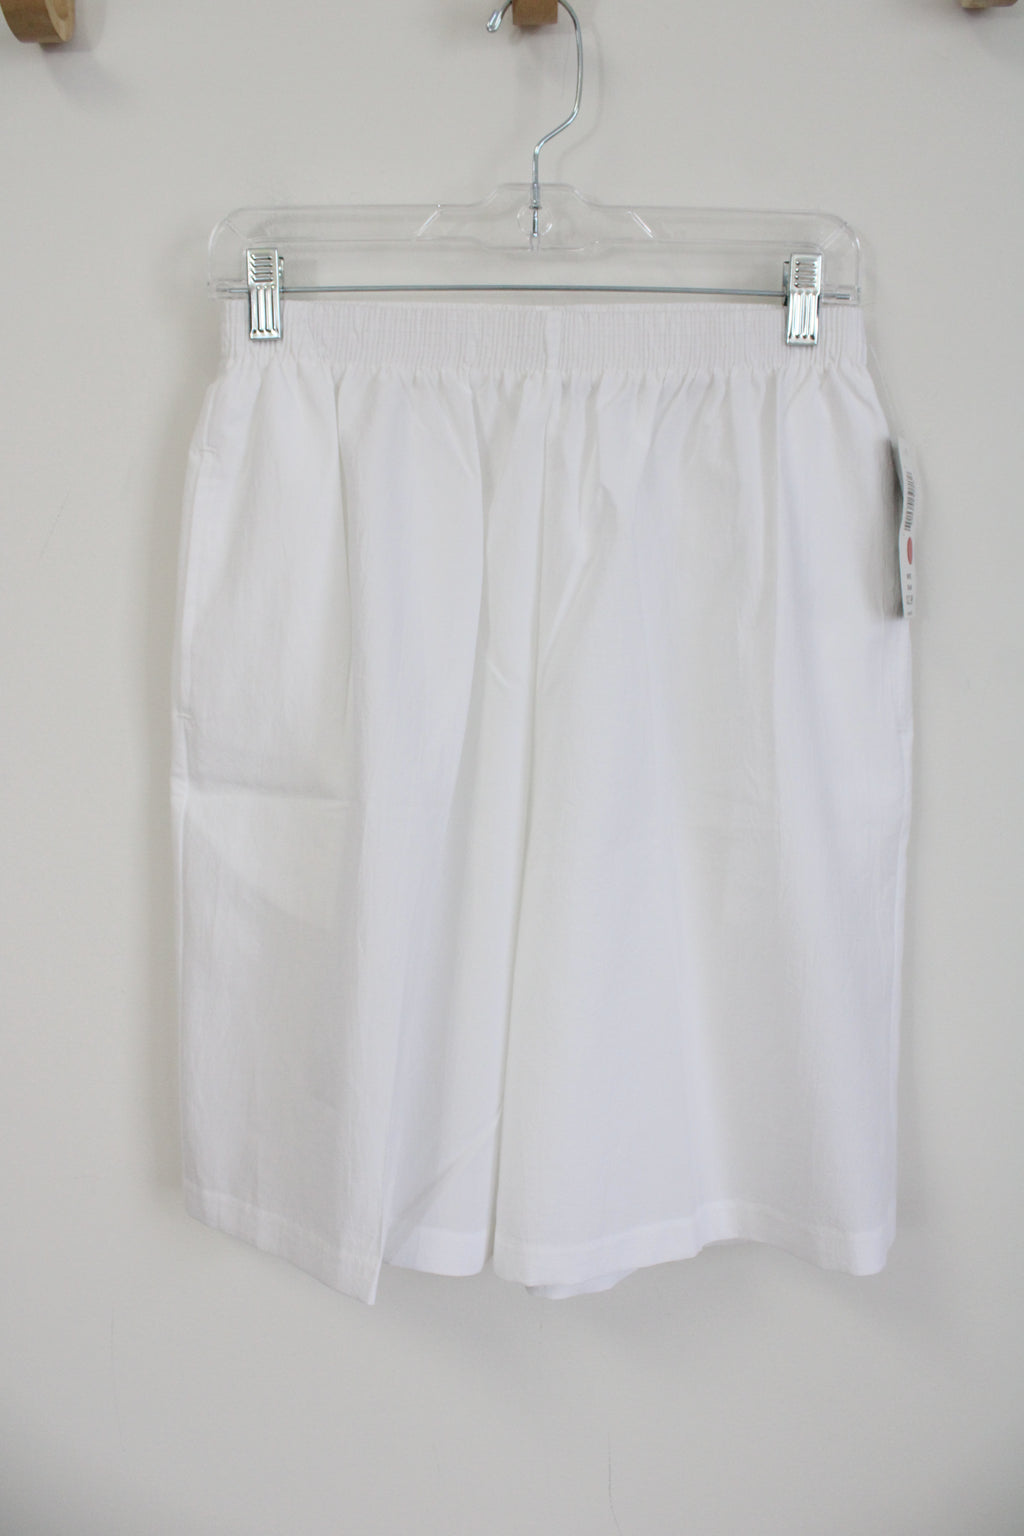 NEW Bonworth White Polyester Shorts | M